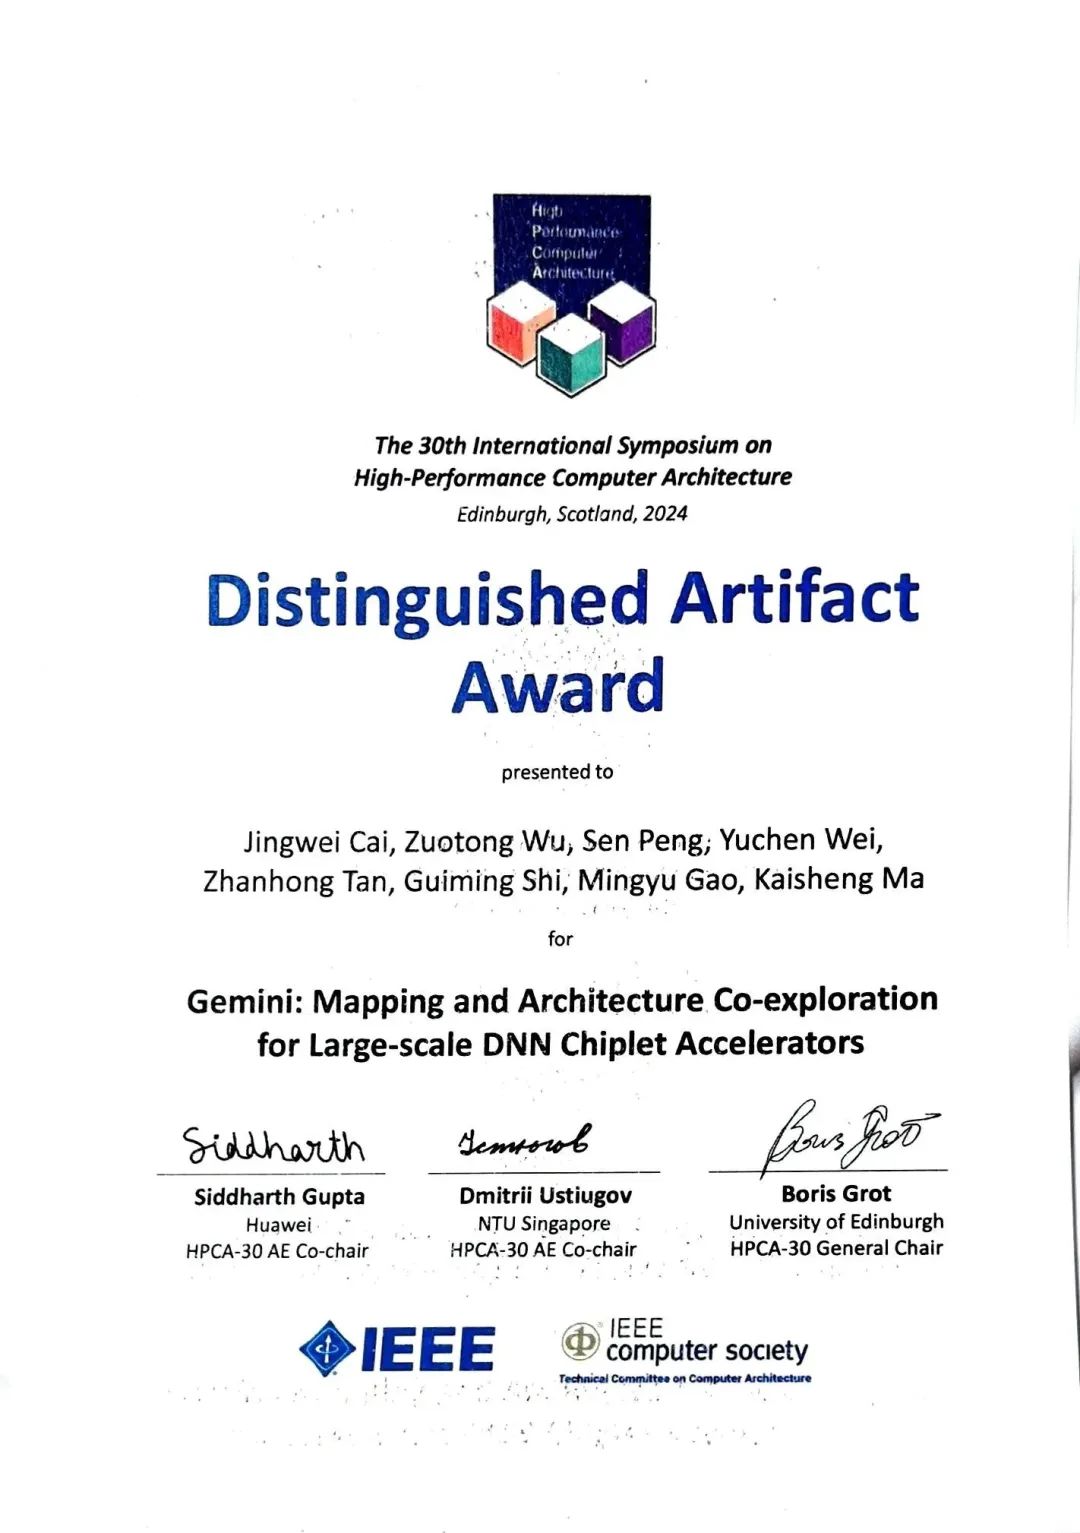 马恺声与高鸣宇研究组成果荣获HPCA2024 Distinguished Artifact Award